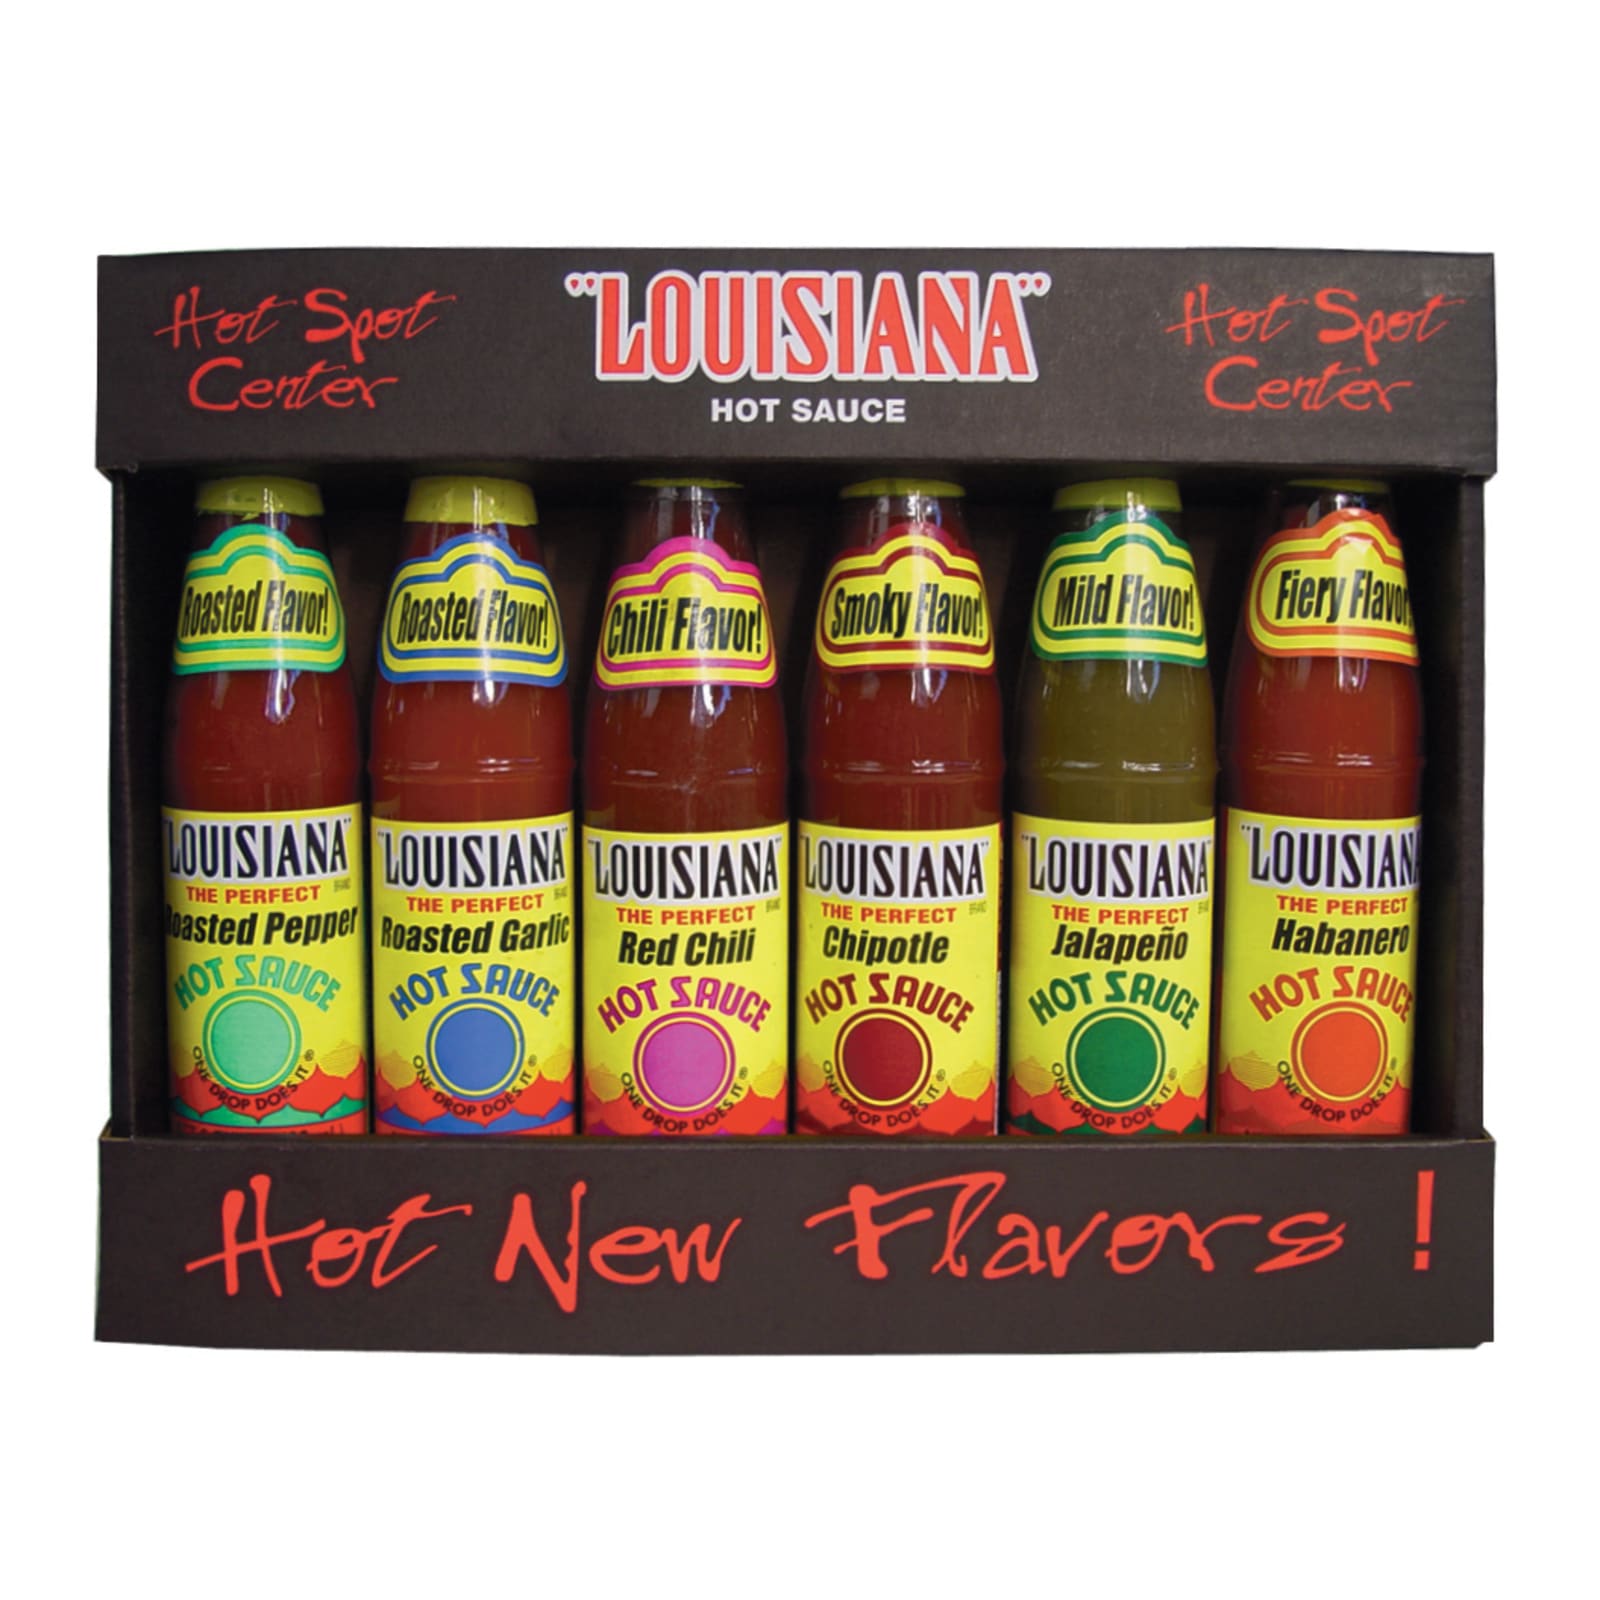 Louisiana Brand The Perfect Hot Sauce, Hot Sauce